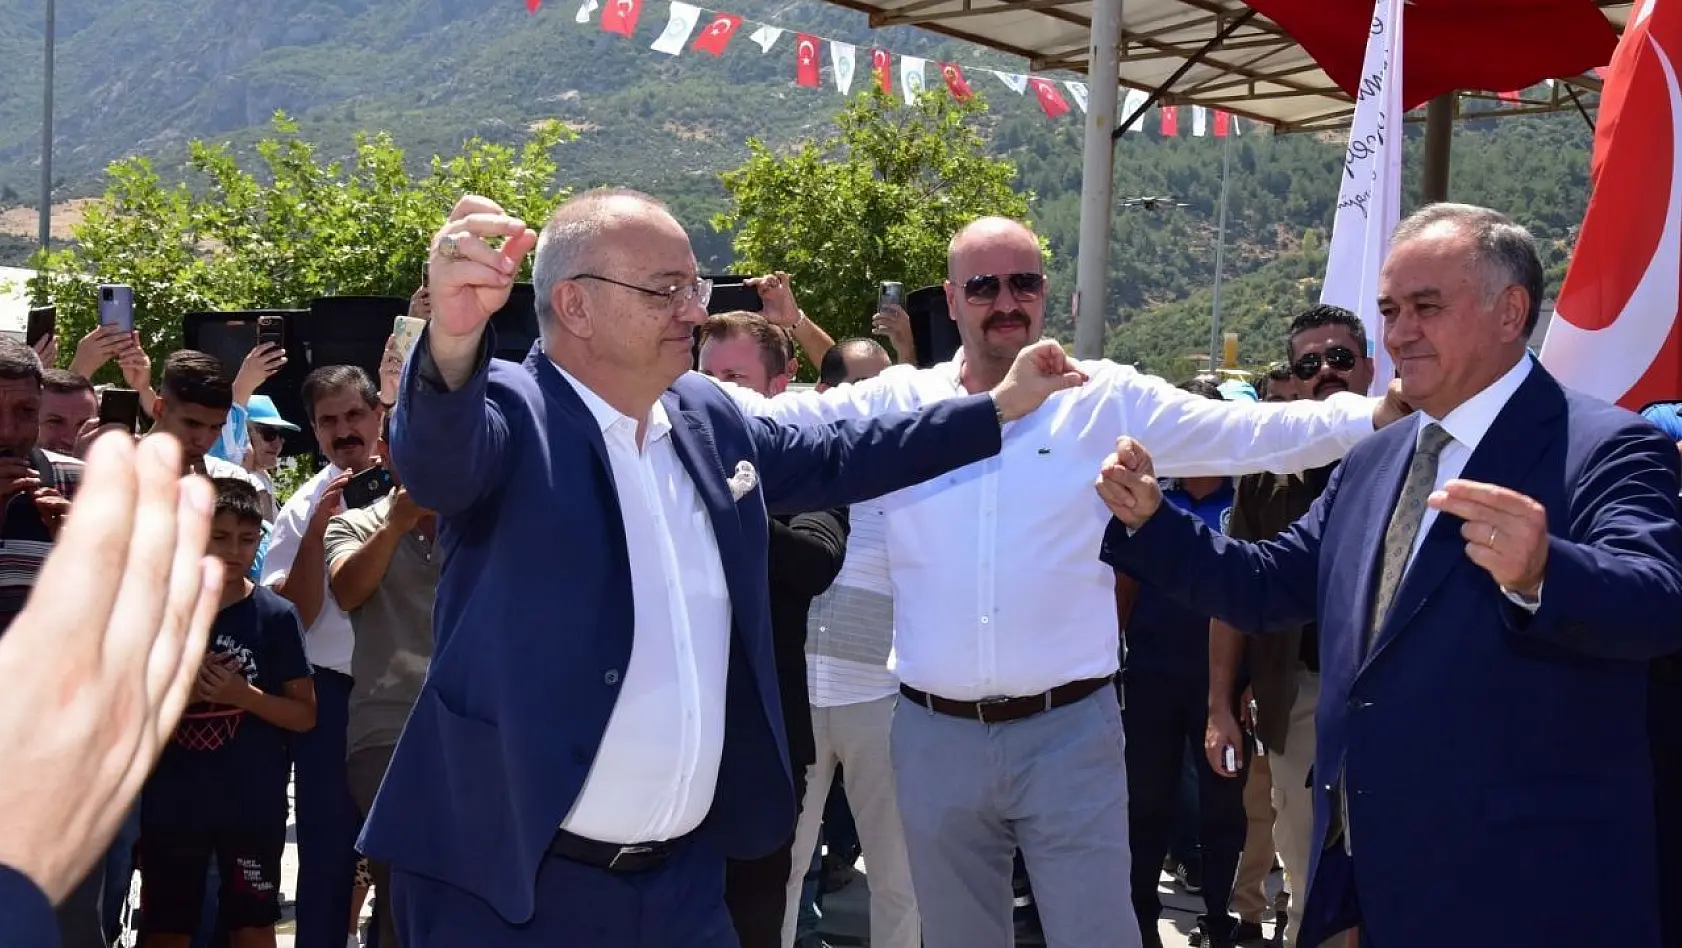 Büyükşehir çalışanlarından maaş zammına davullu zurnalı kutlama